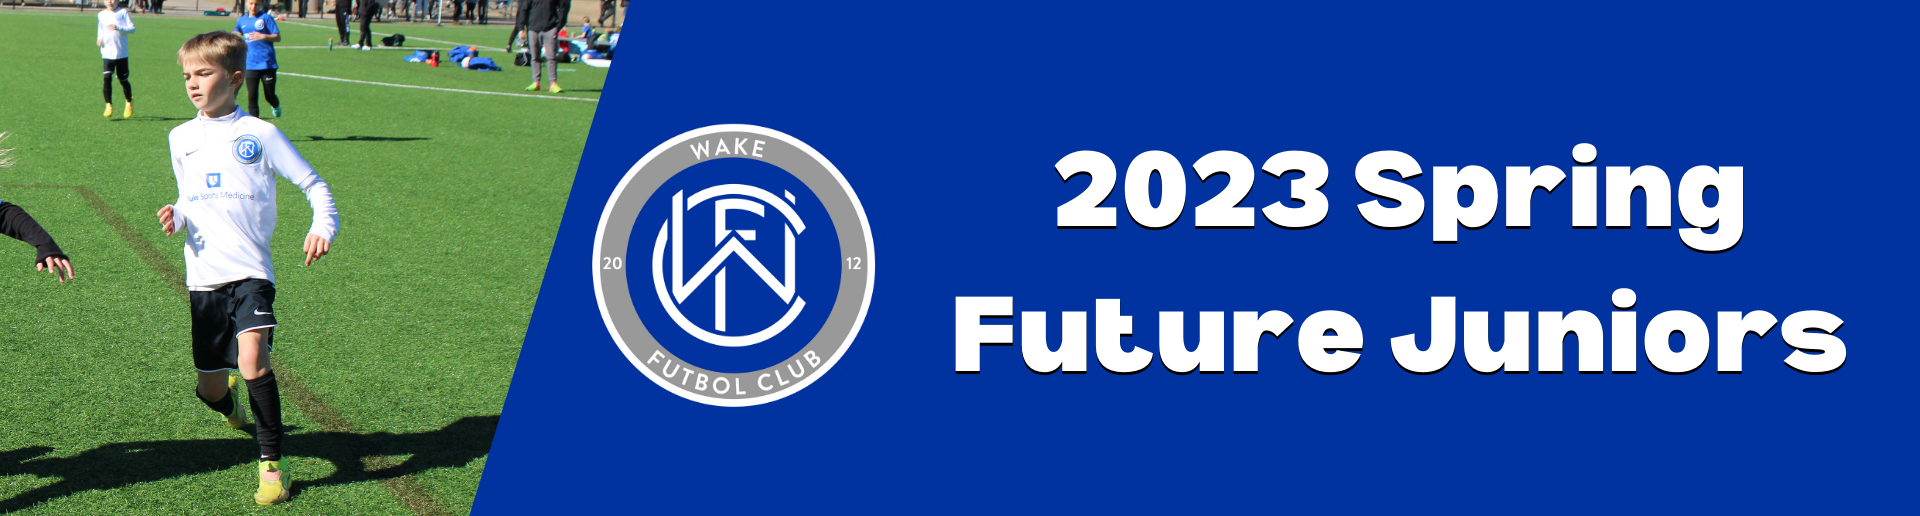 2023 Spring Future Juniors